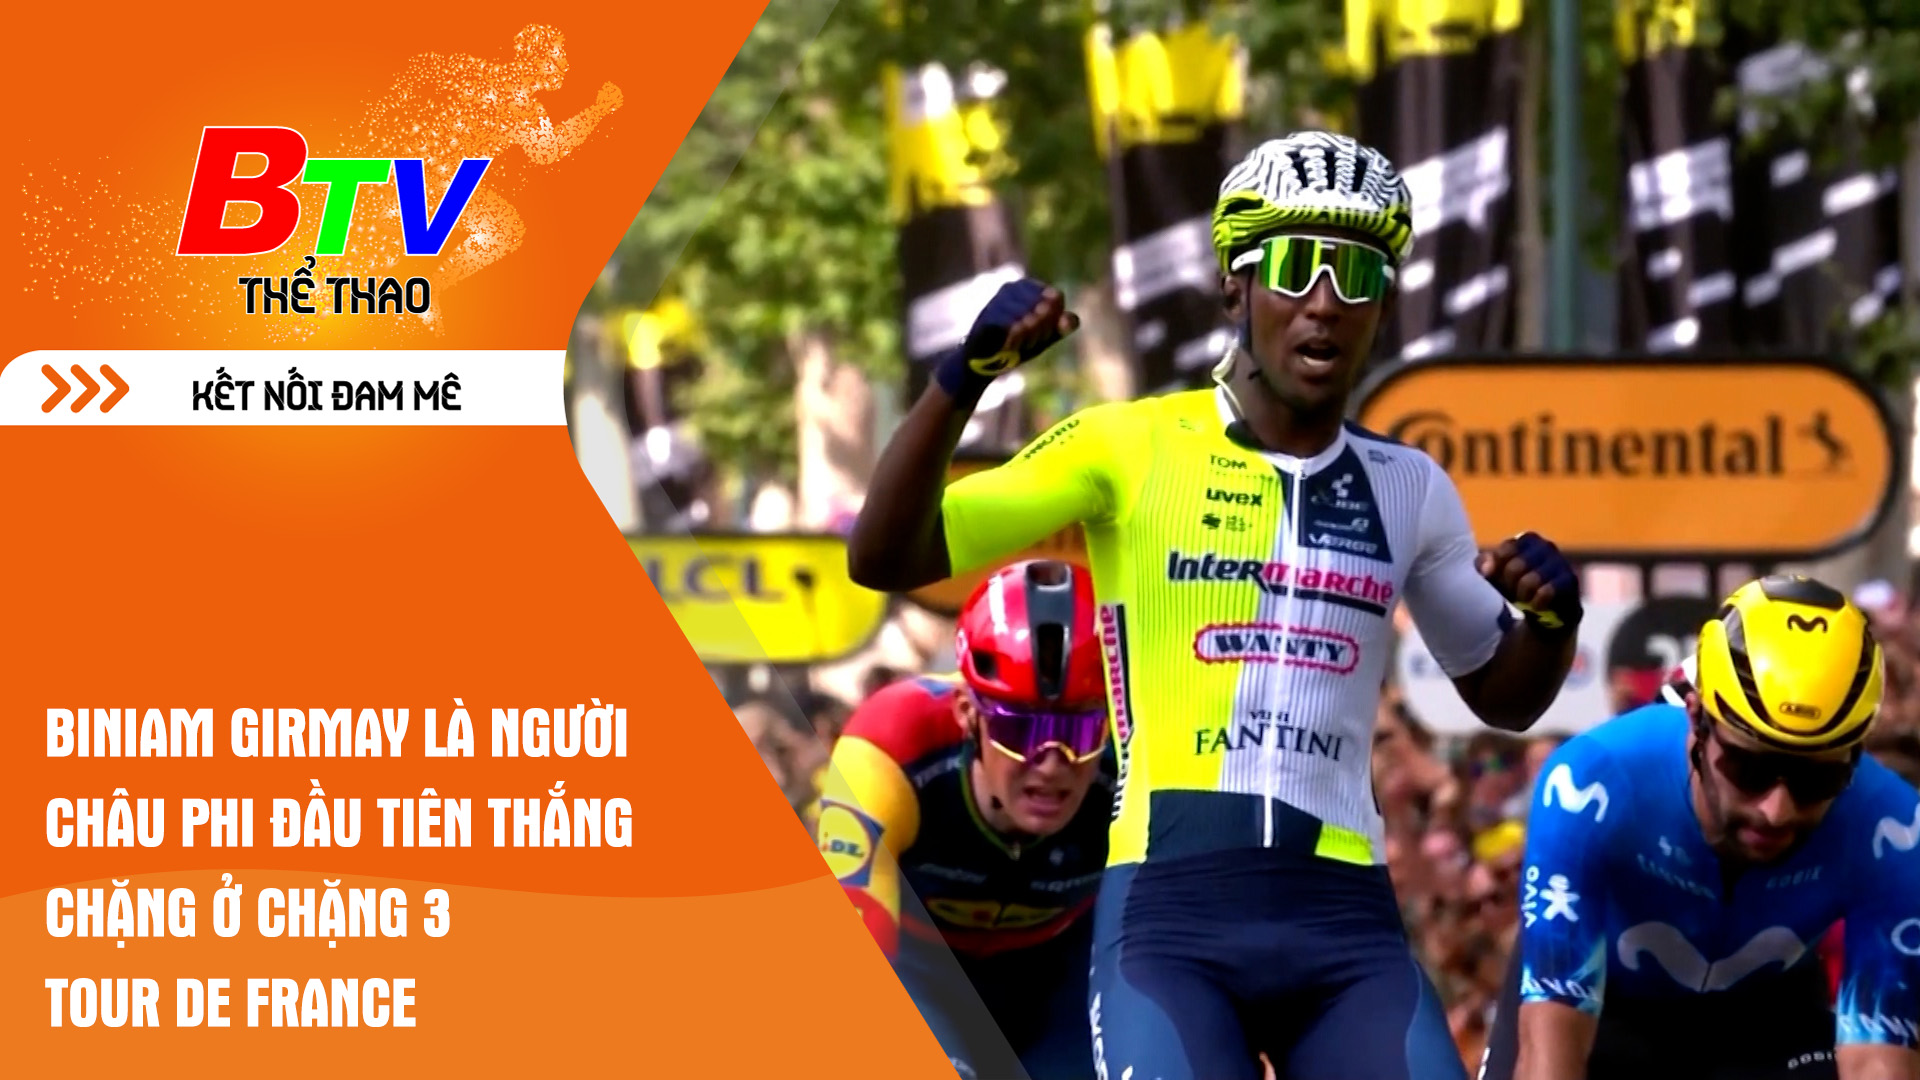 Biniam Girmay là người Châu Phi đầu tiên thắng chặng ở chặng 3 Tour de France | Tin Thể thao 24h	